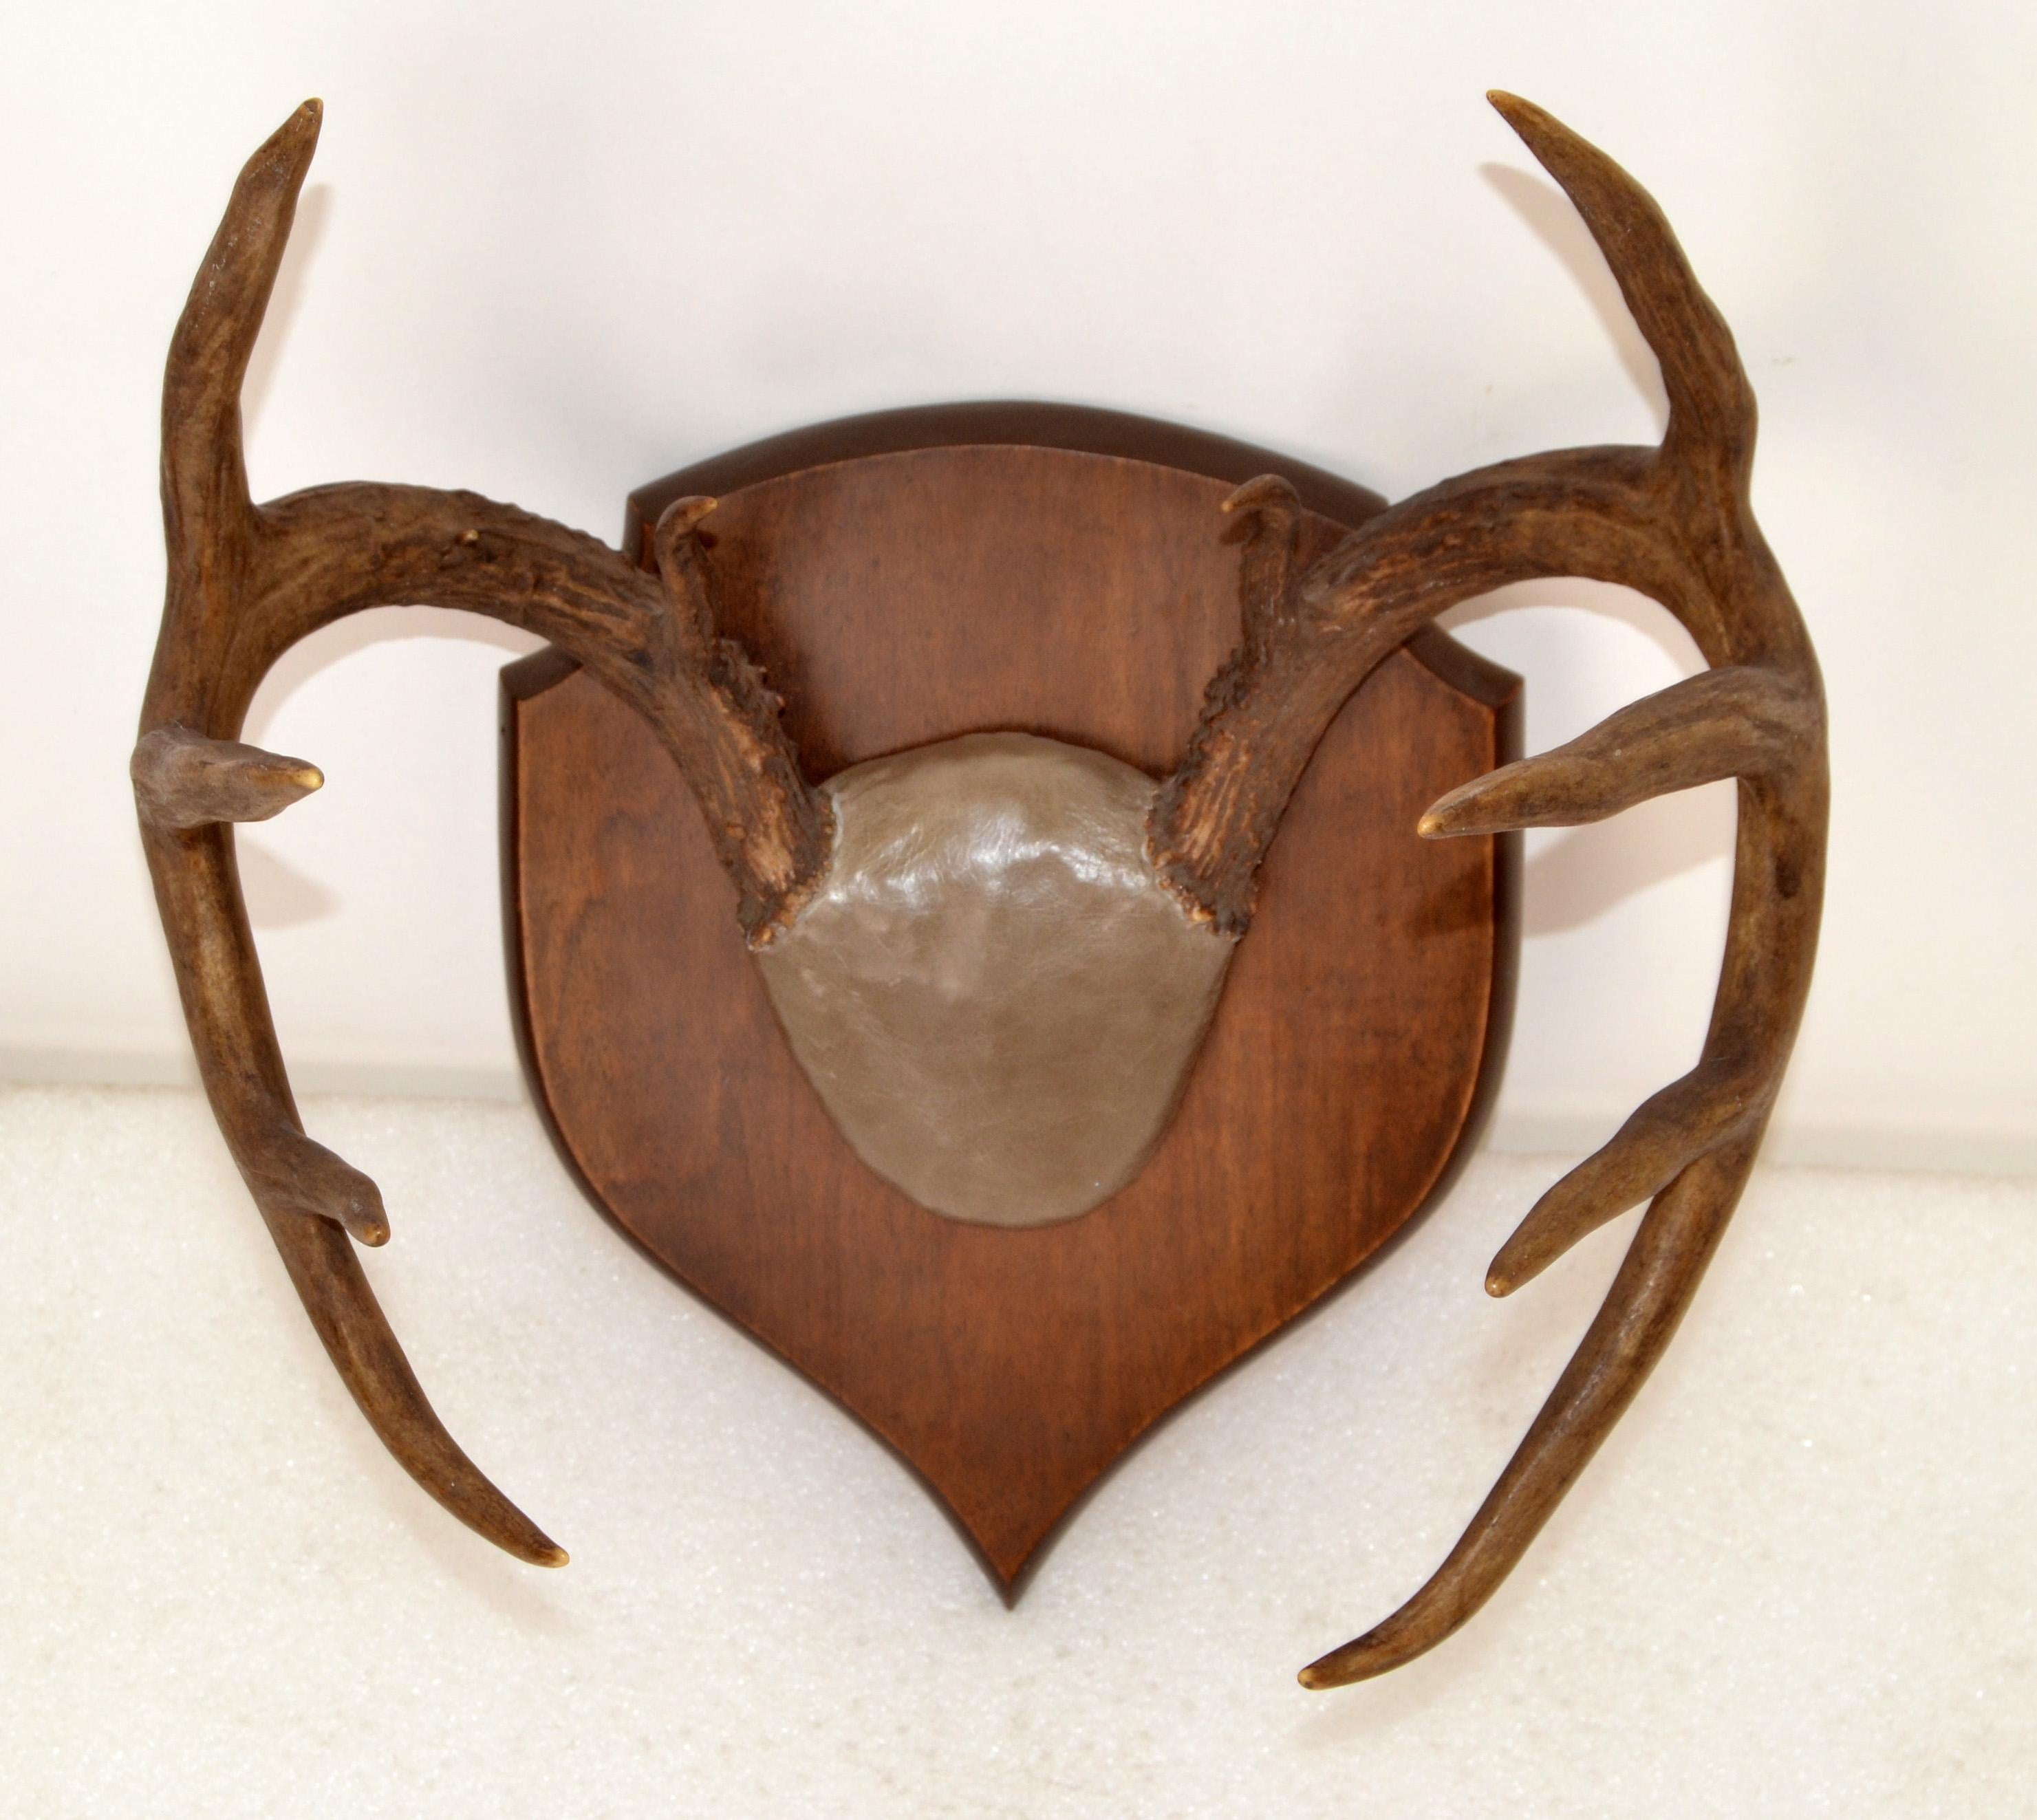 plaque mount deer antlers